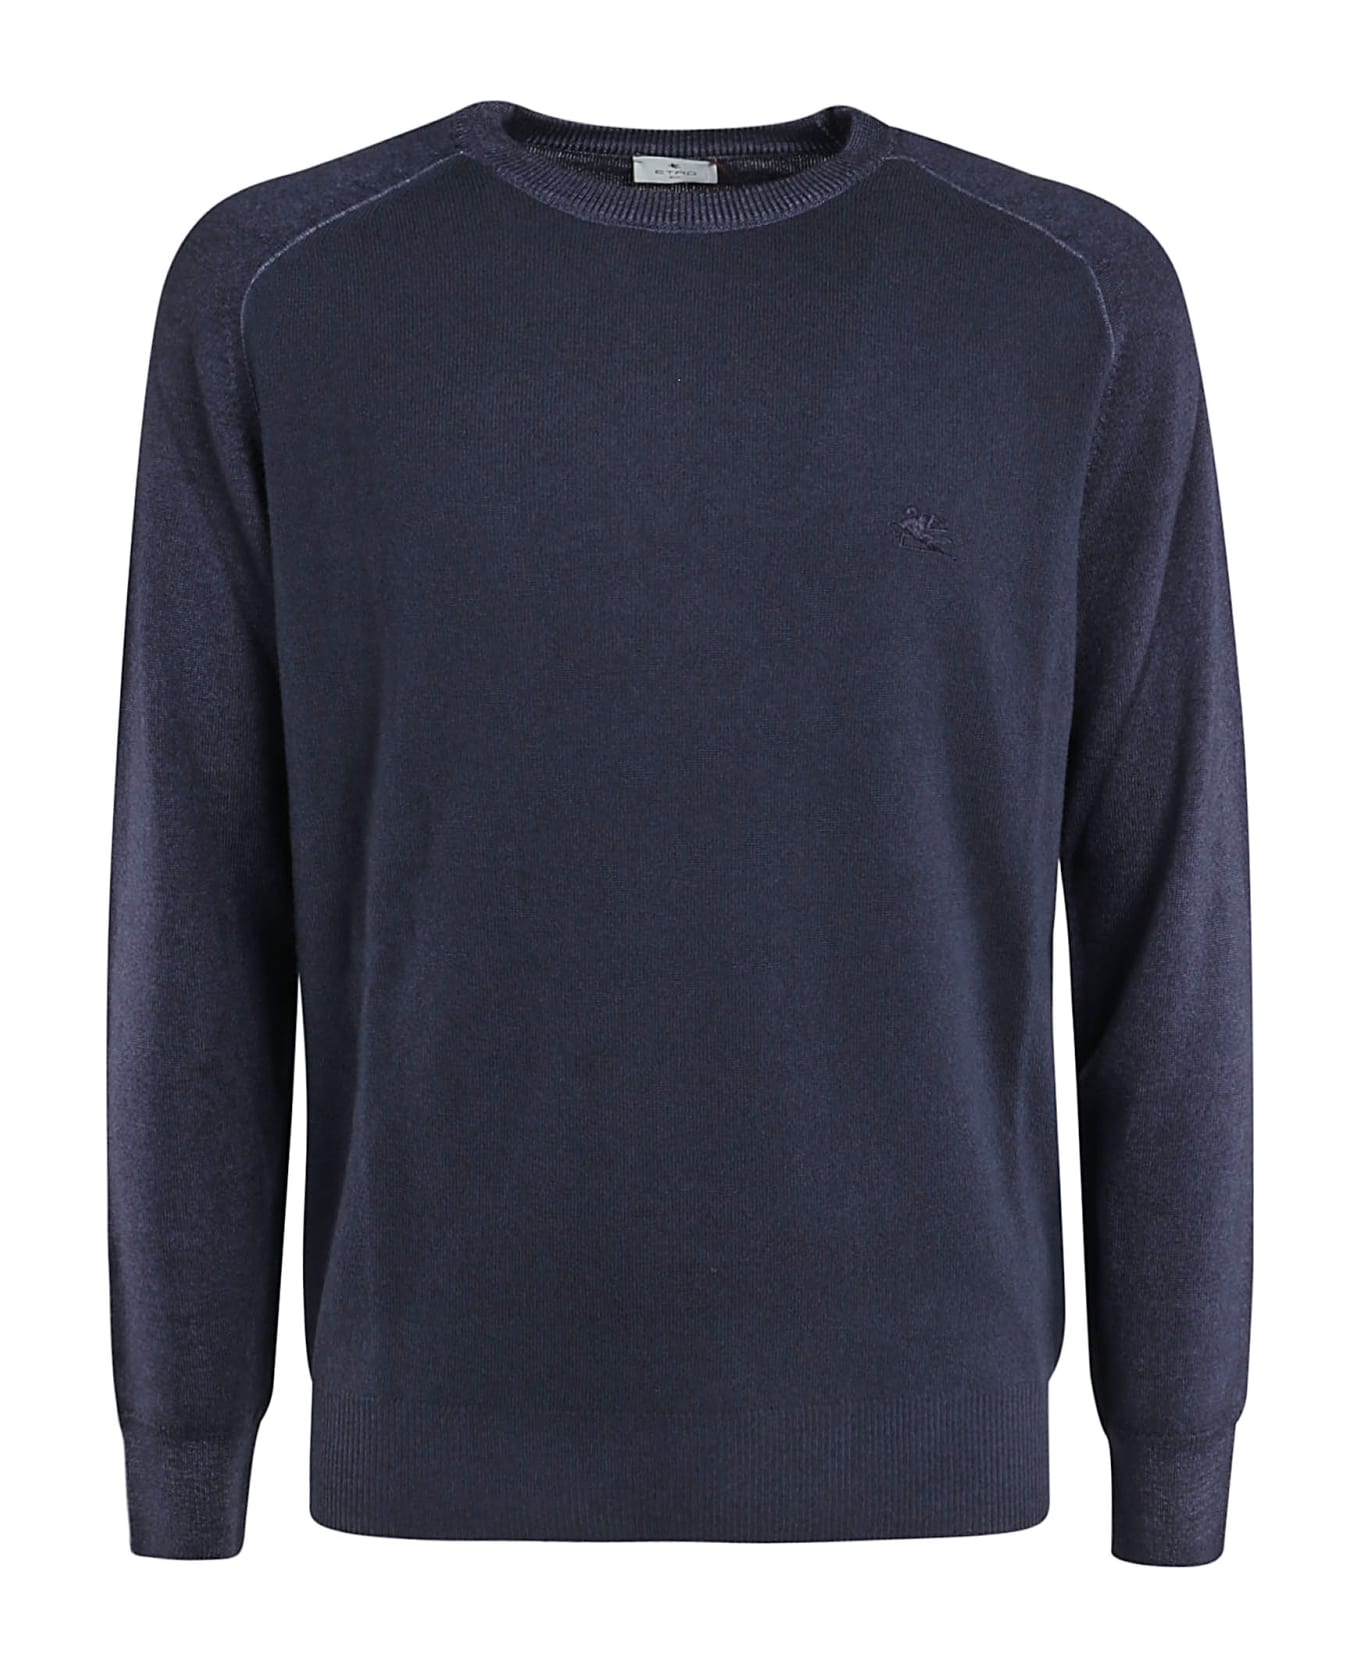 Etro Round Neck Sweater - Blu Navy